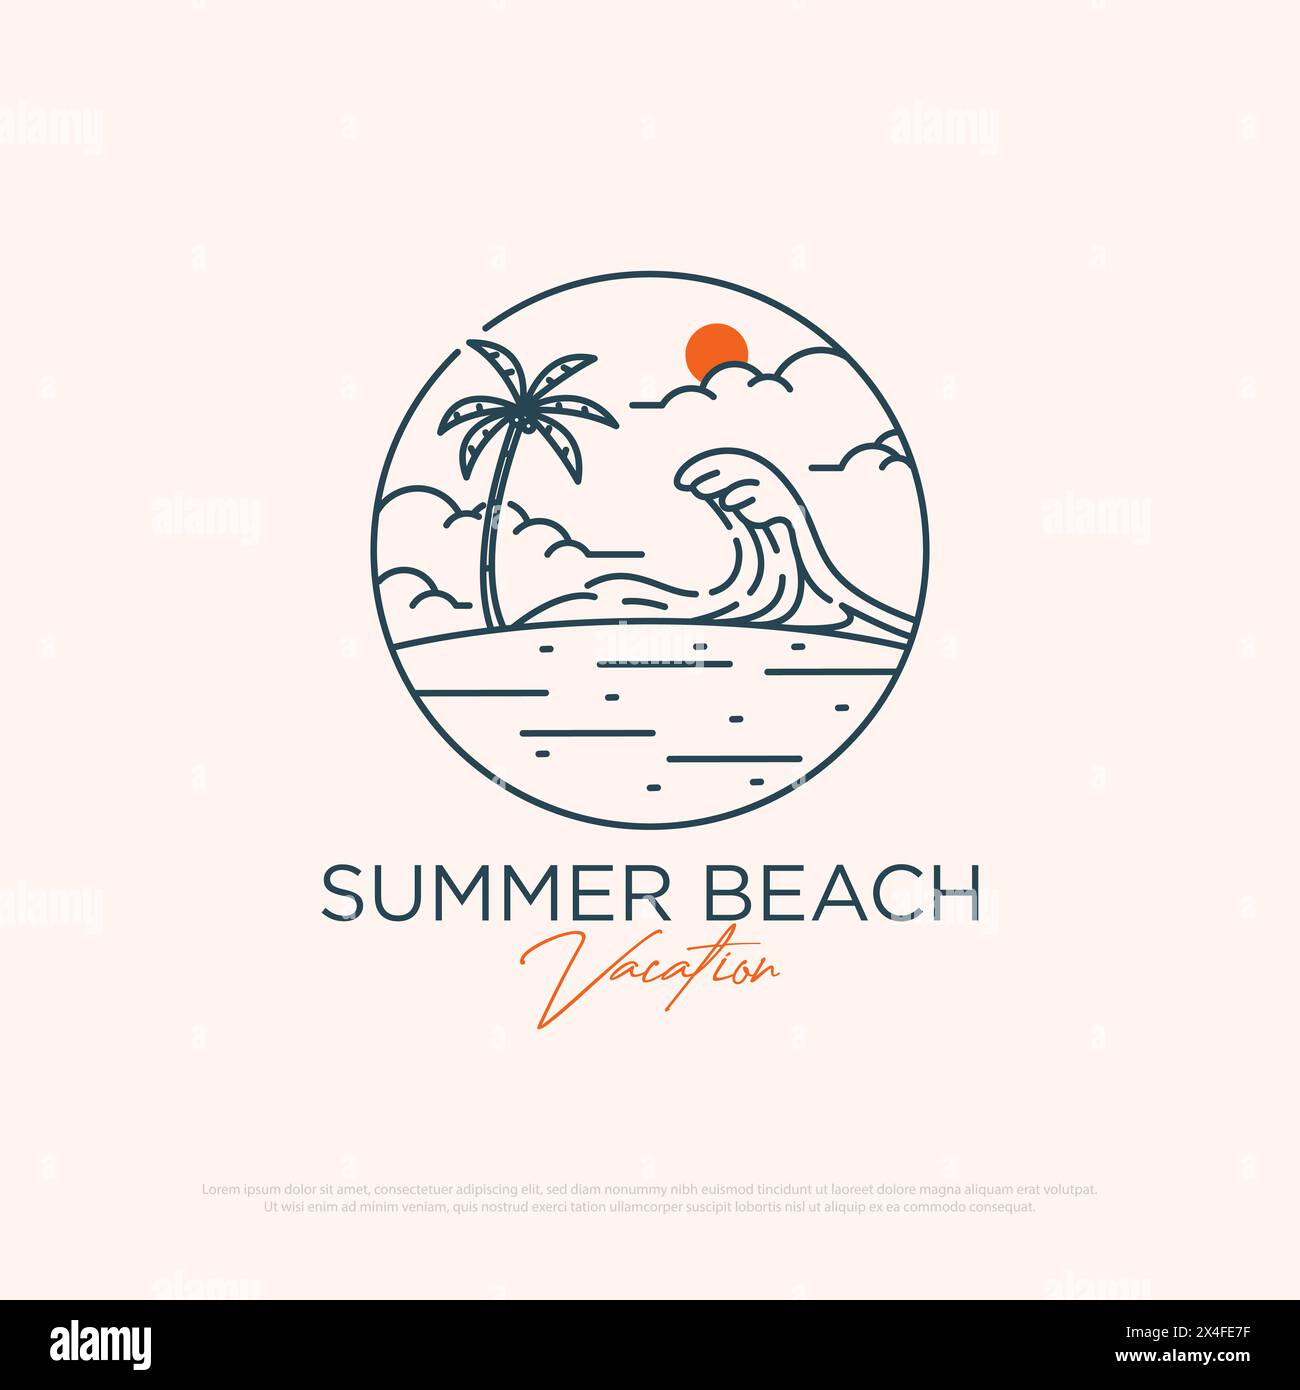 Summer Beach Adventure Logo Design mit Linienart einfache Vektor minimalistische Illustration Vorlage, Reisebüro Logo Designs Stock Vektor